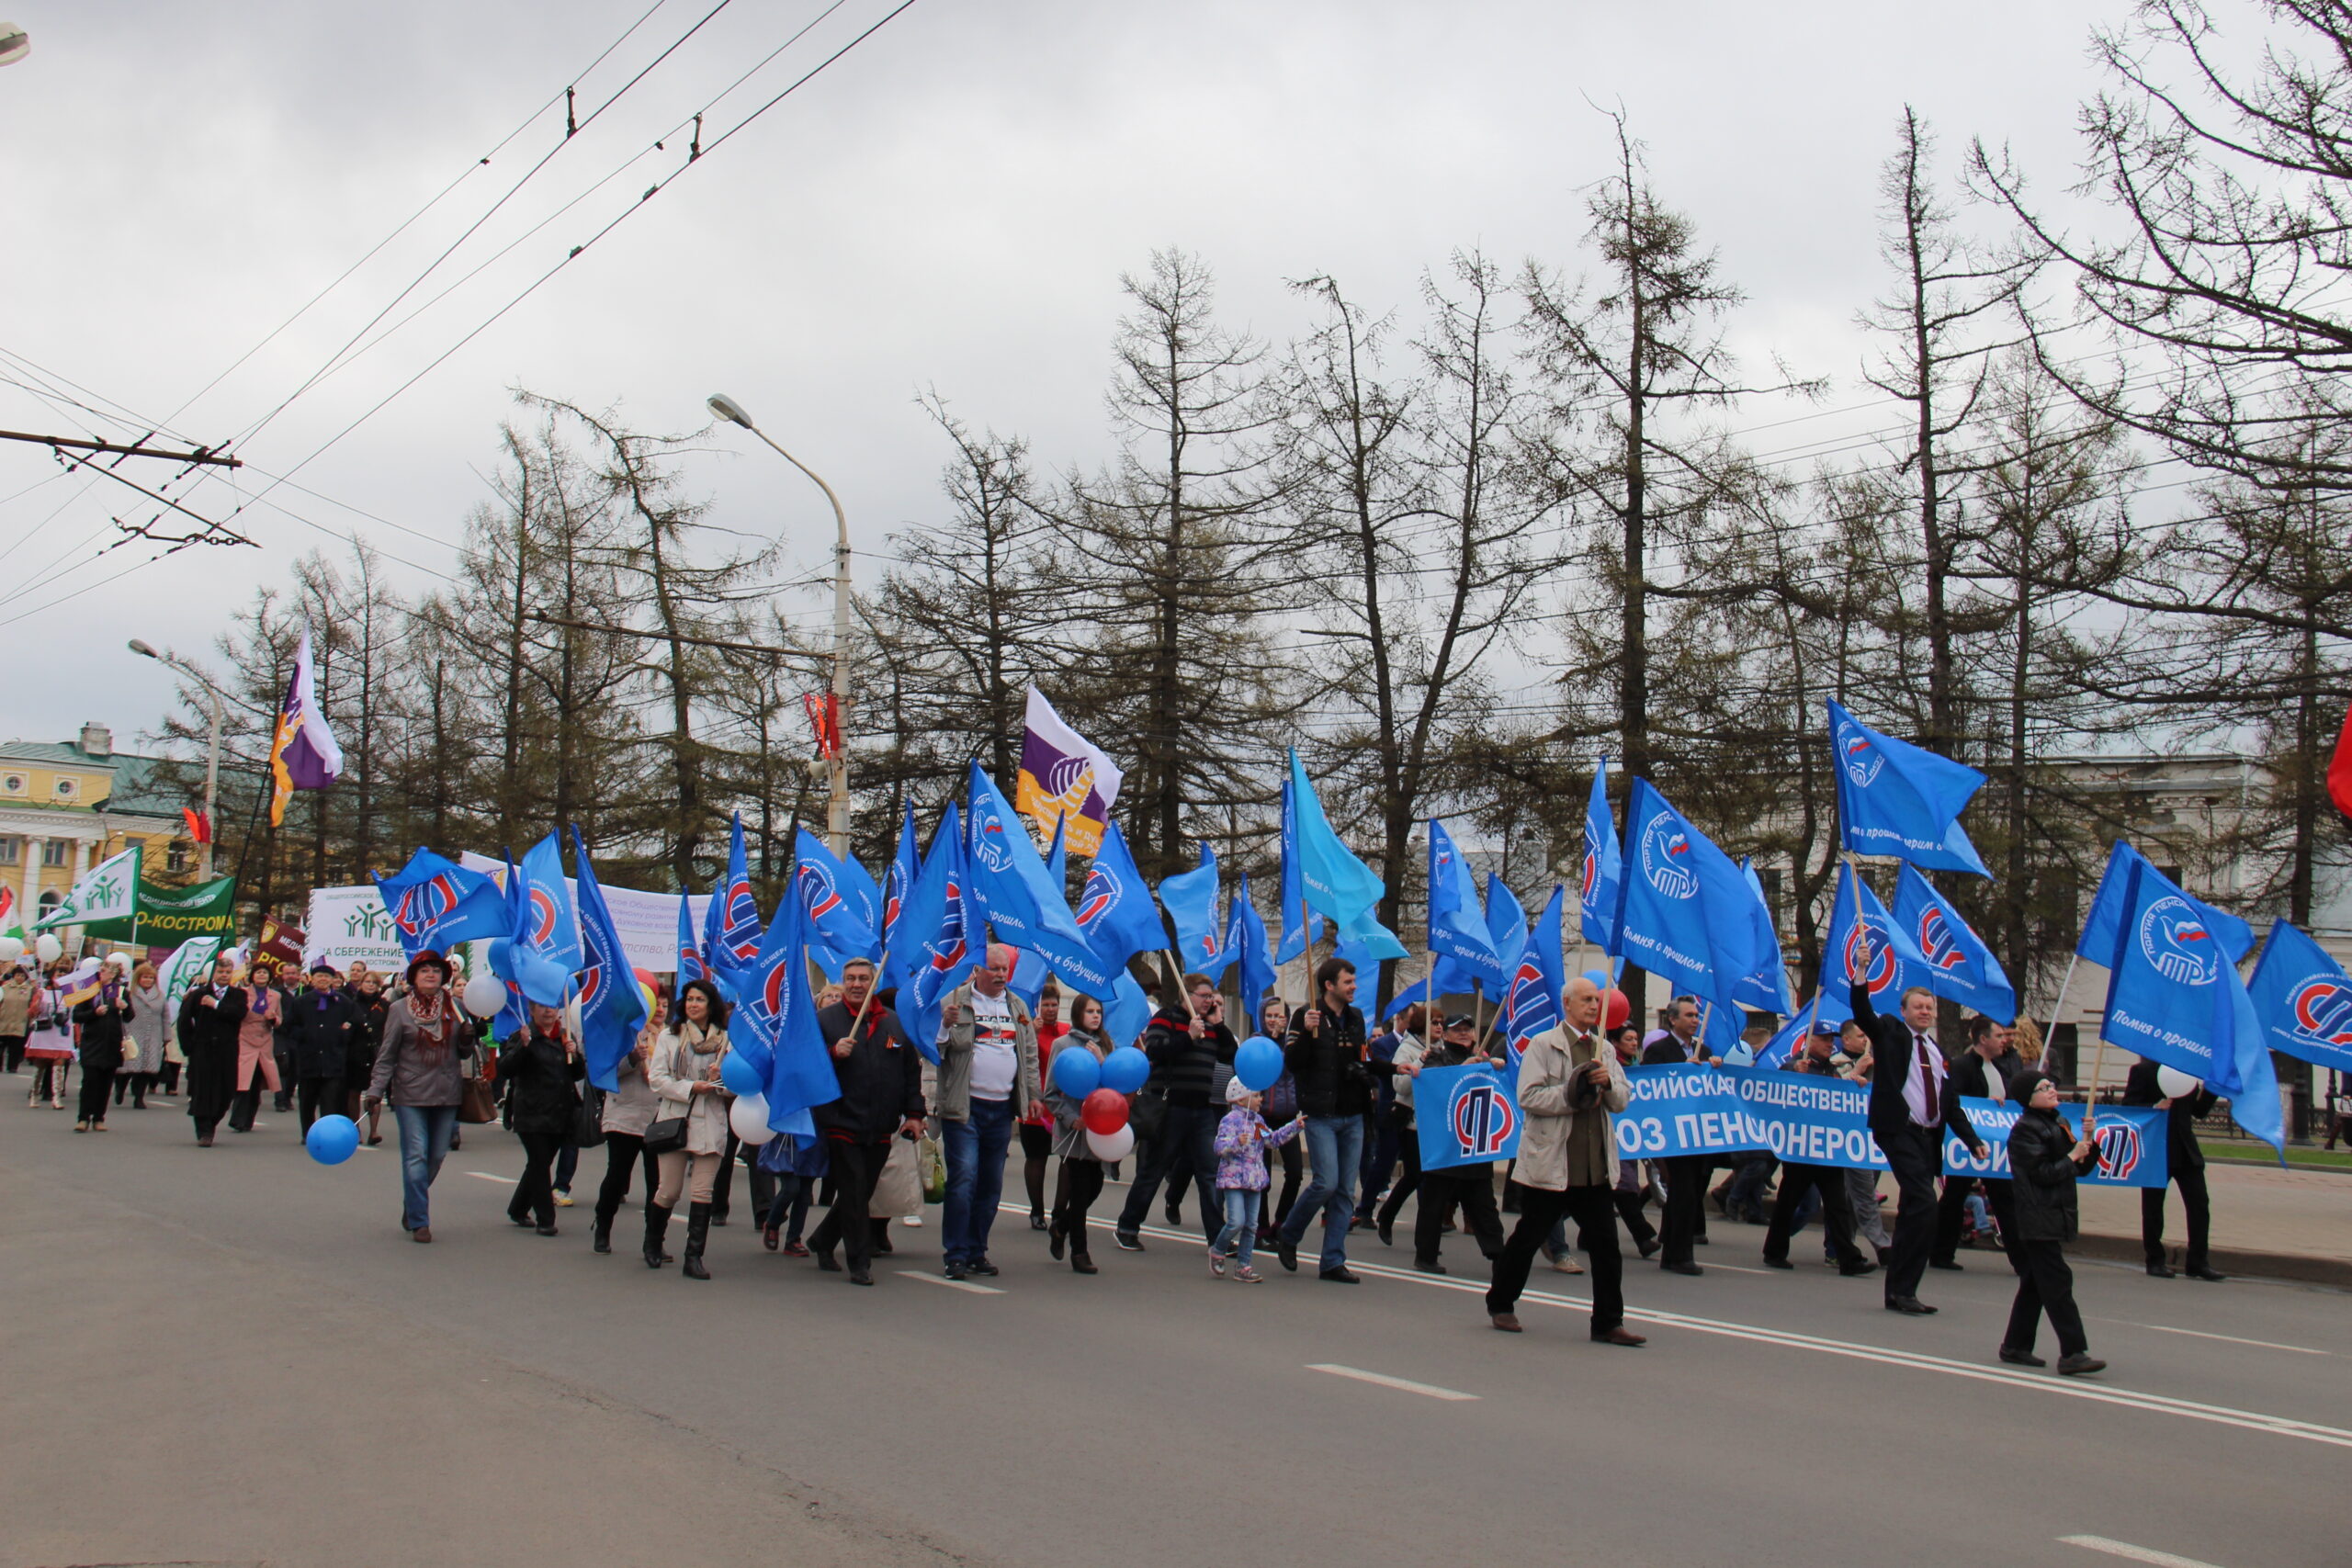 Вместо демонстрации: впервые за много лет праздник Первомая в Костроме проведут в усеченном формате